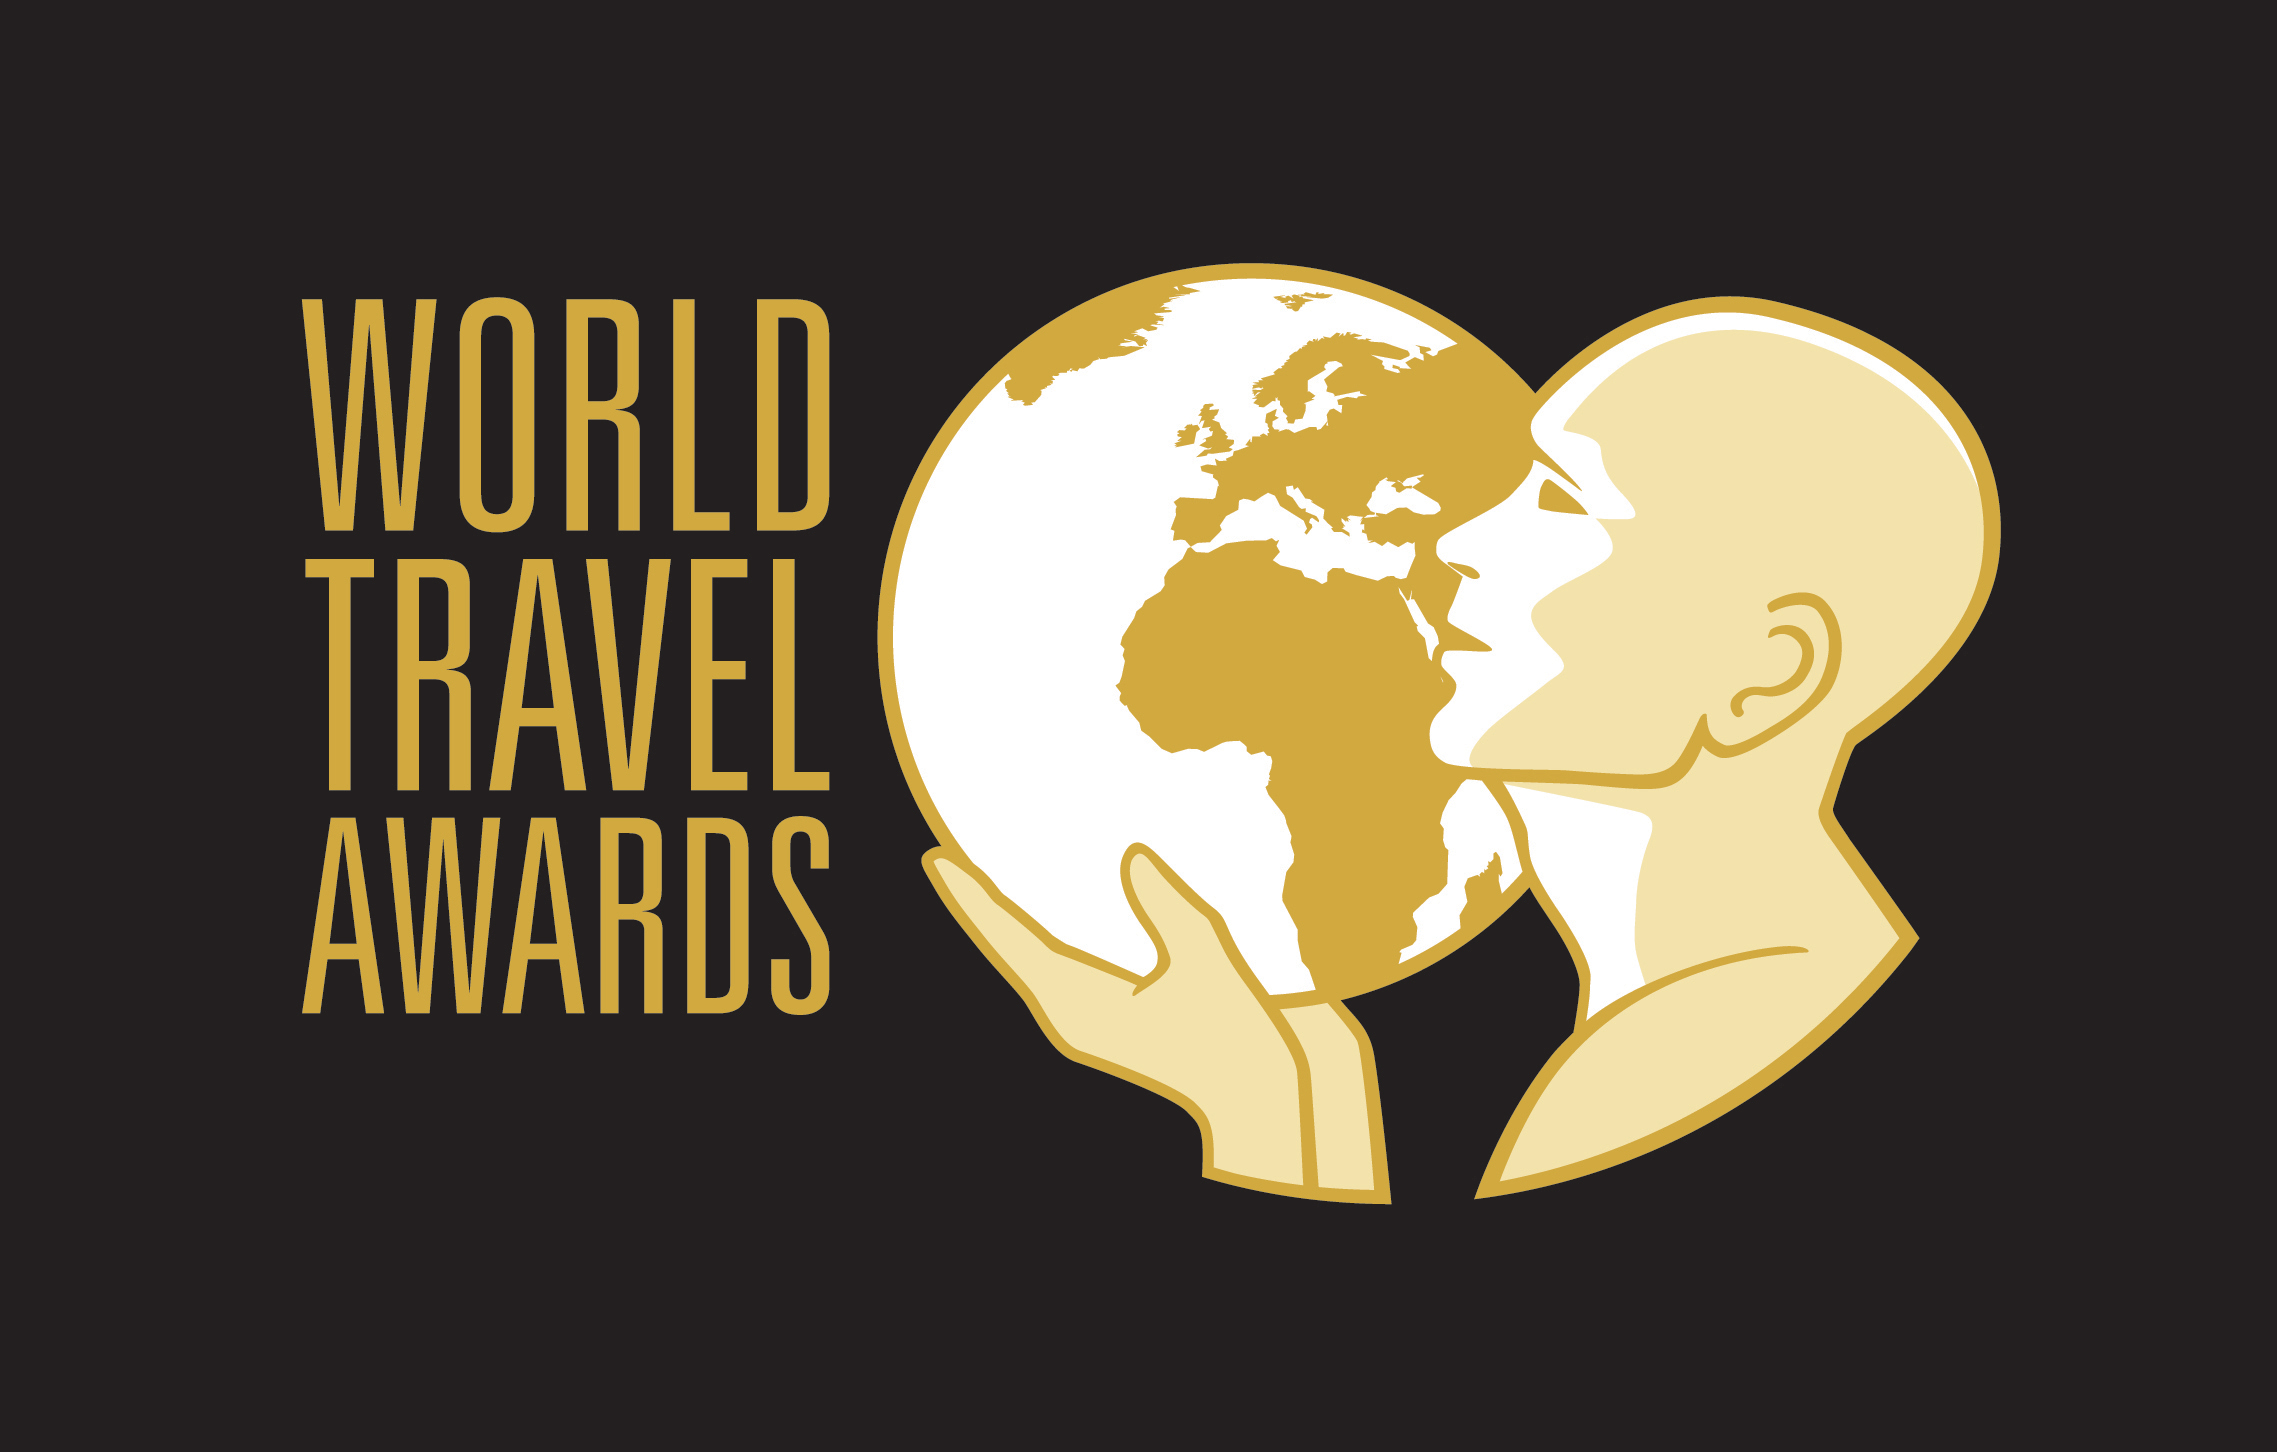 World Travel Awards (@WTravelAwards) / Twitter